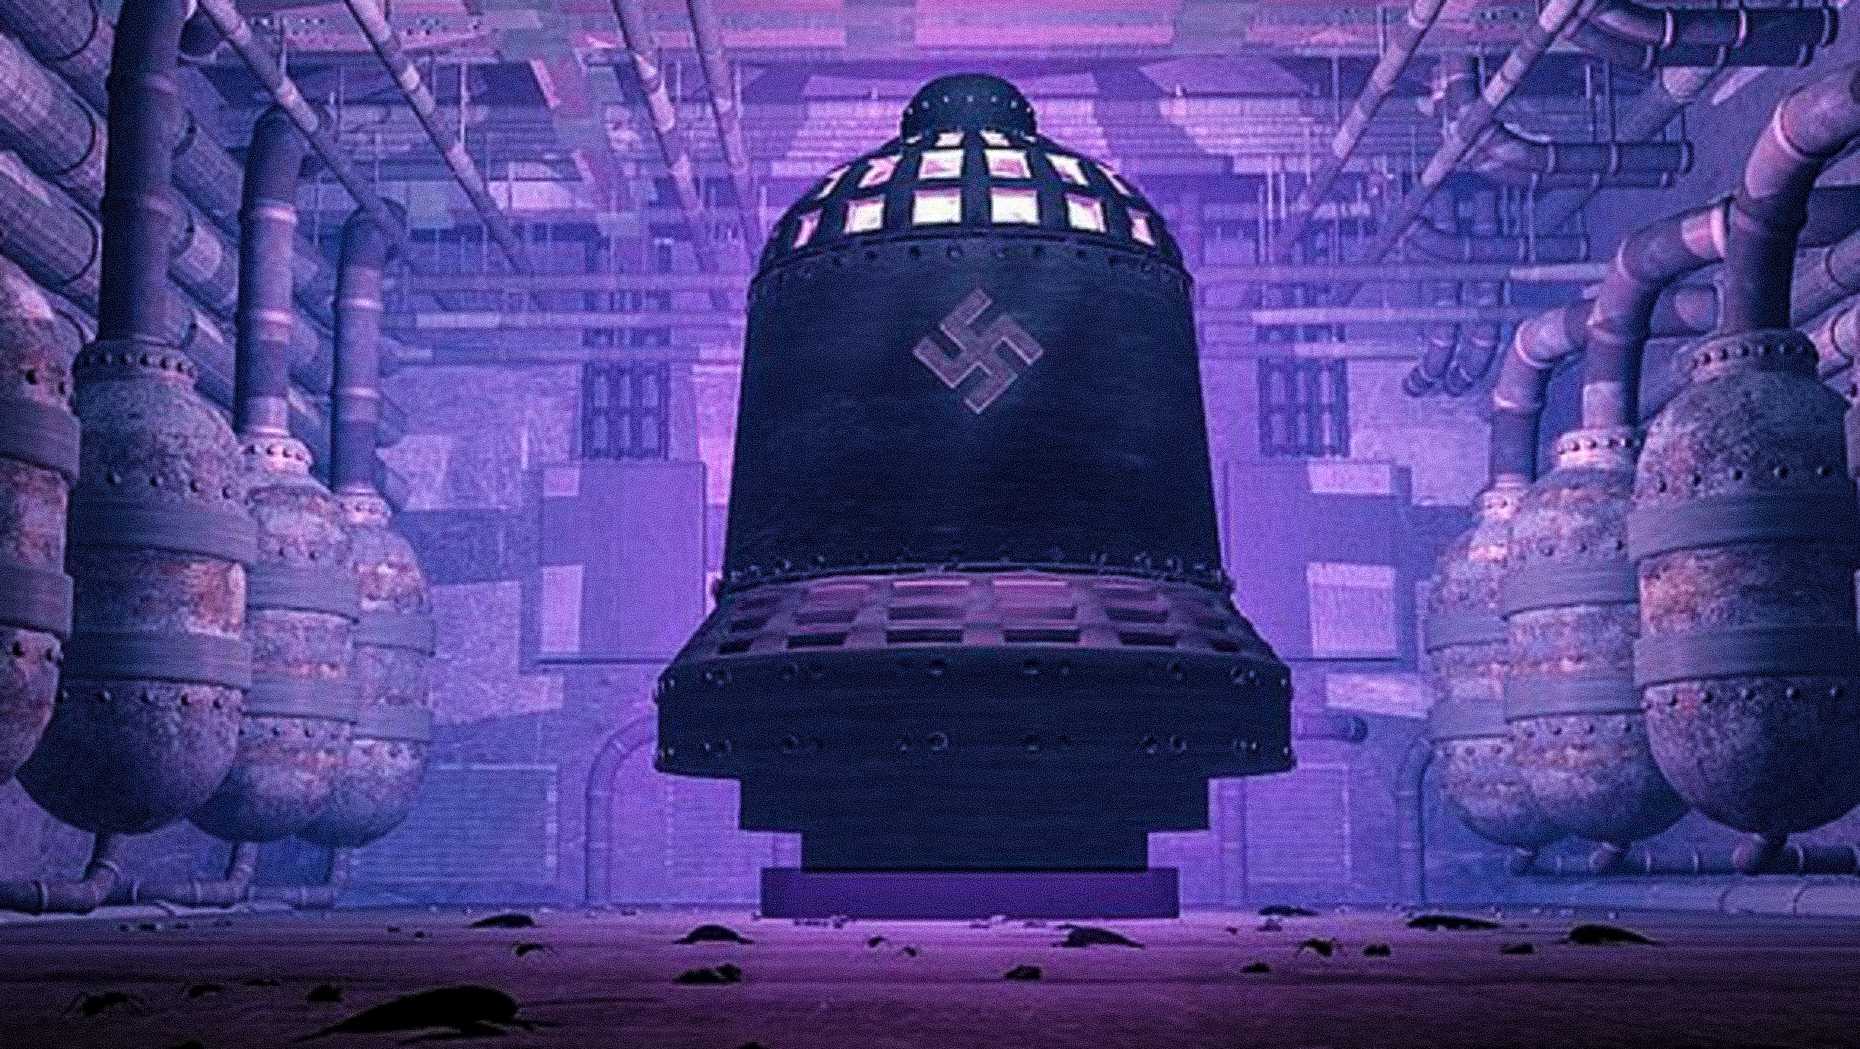 La conspiración OVNI Die Glocke: ¿Qué inspiró a los nazis a crear la máquina antigravedad con forma de campana?